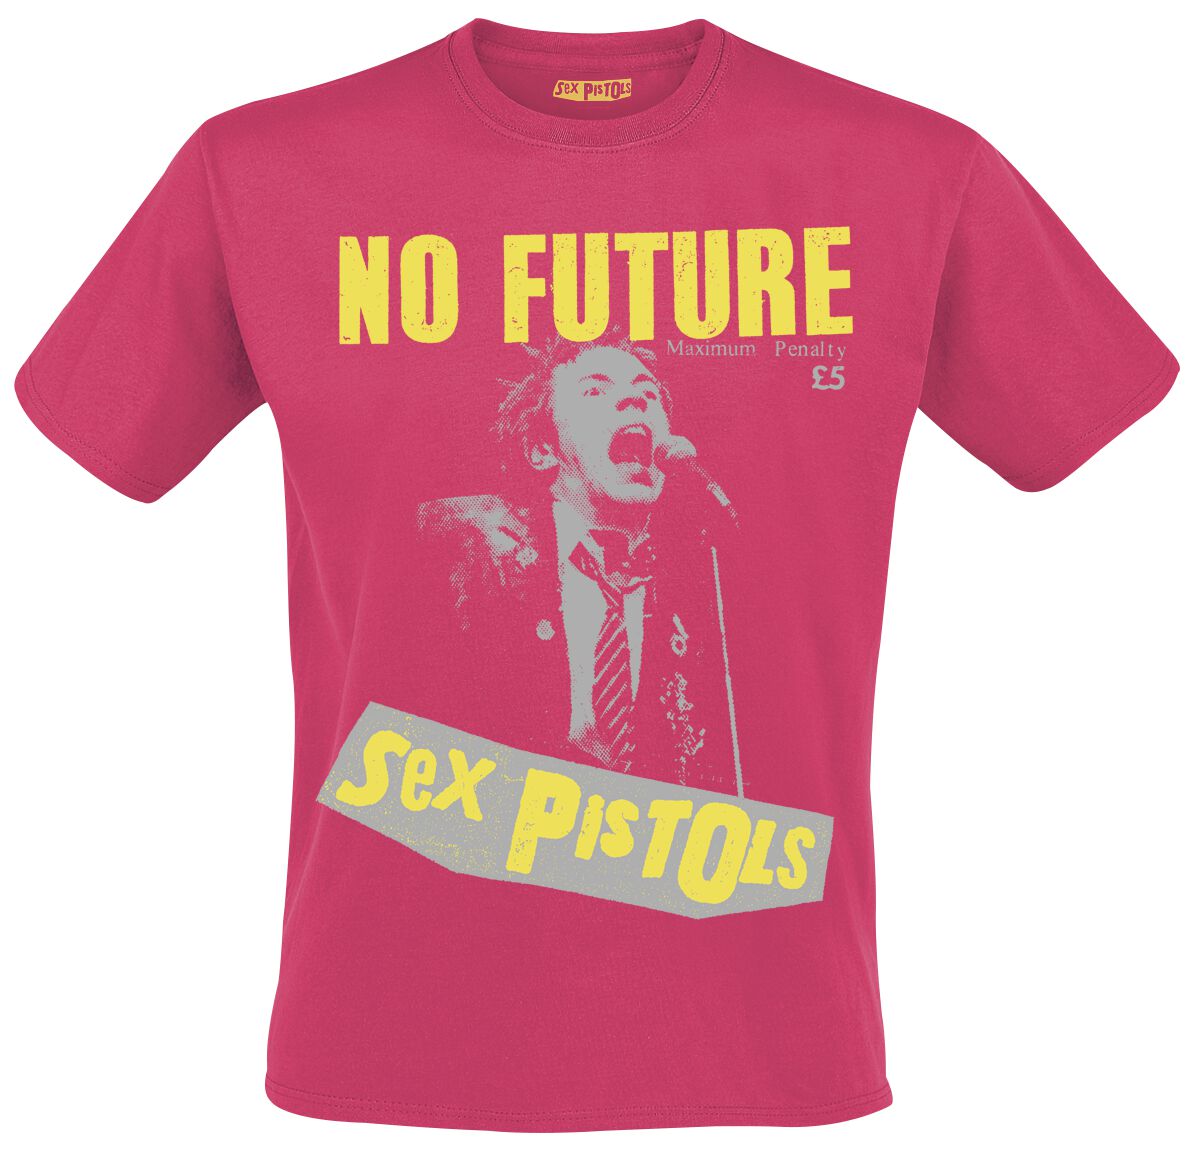 T-Shirt Manches courtes de Sex Pistols - No Future Live Photo - XL - pour Homme - rose